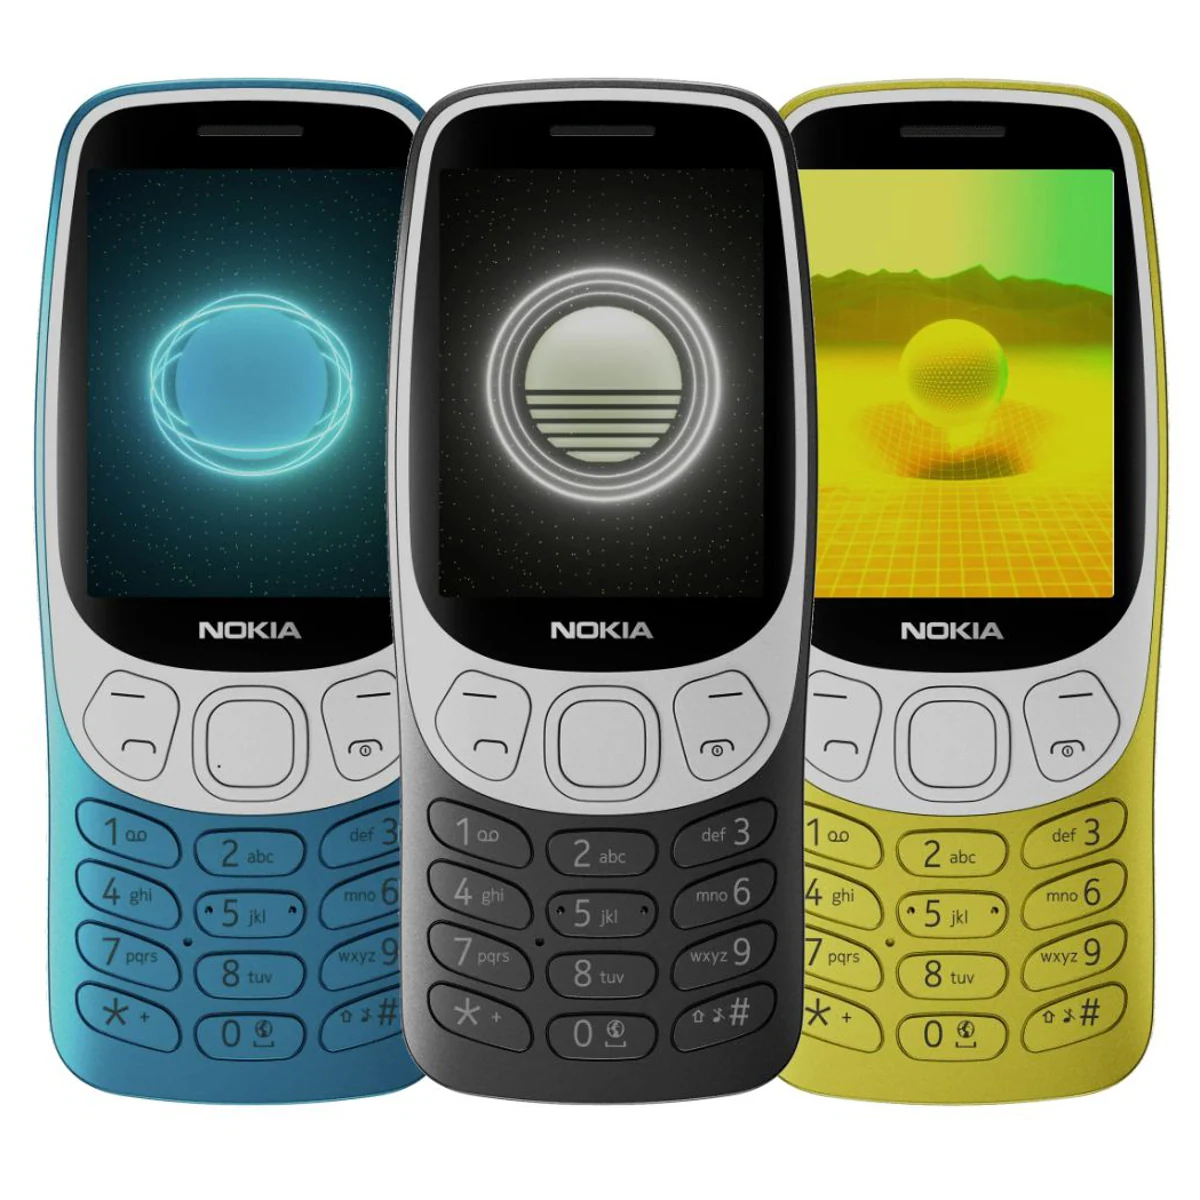 Los nuevos Nokia 3210